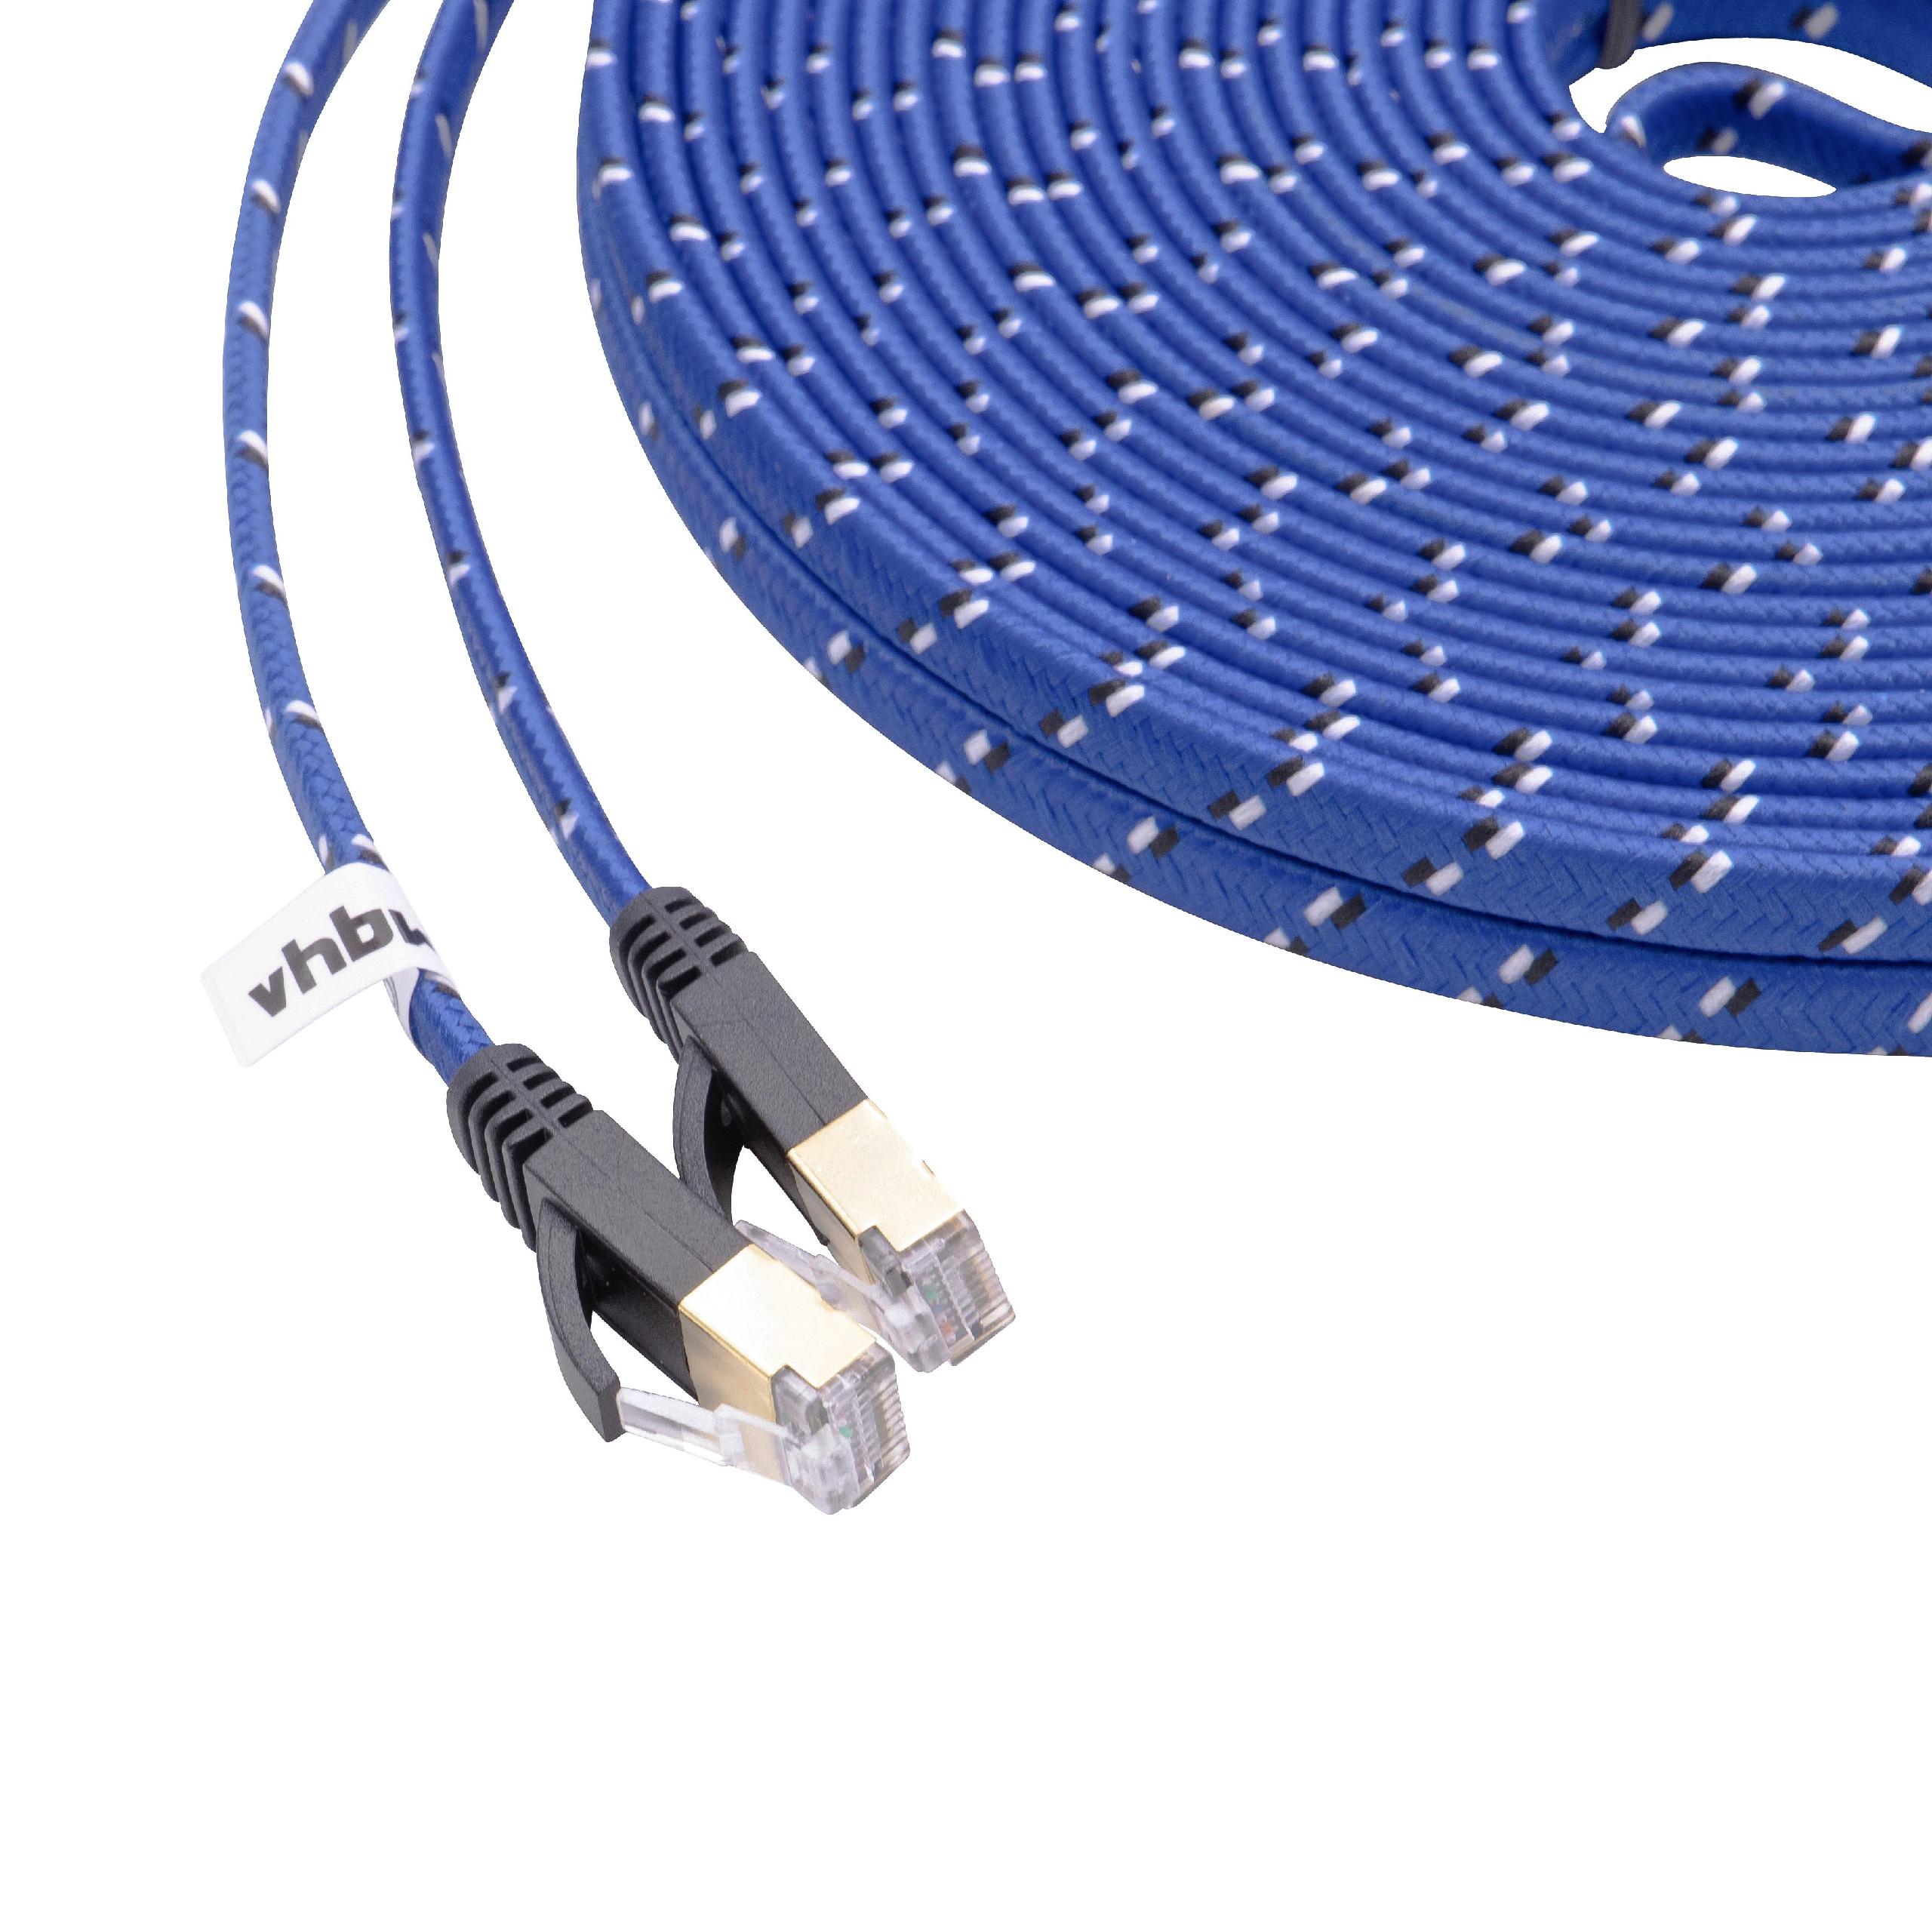 Netzwerkkabel LAN Kabel Patchkabel Cat7, 15m, blau, flach